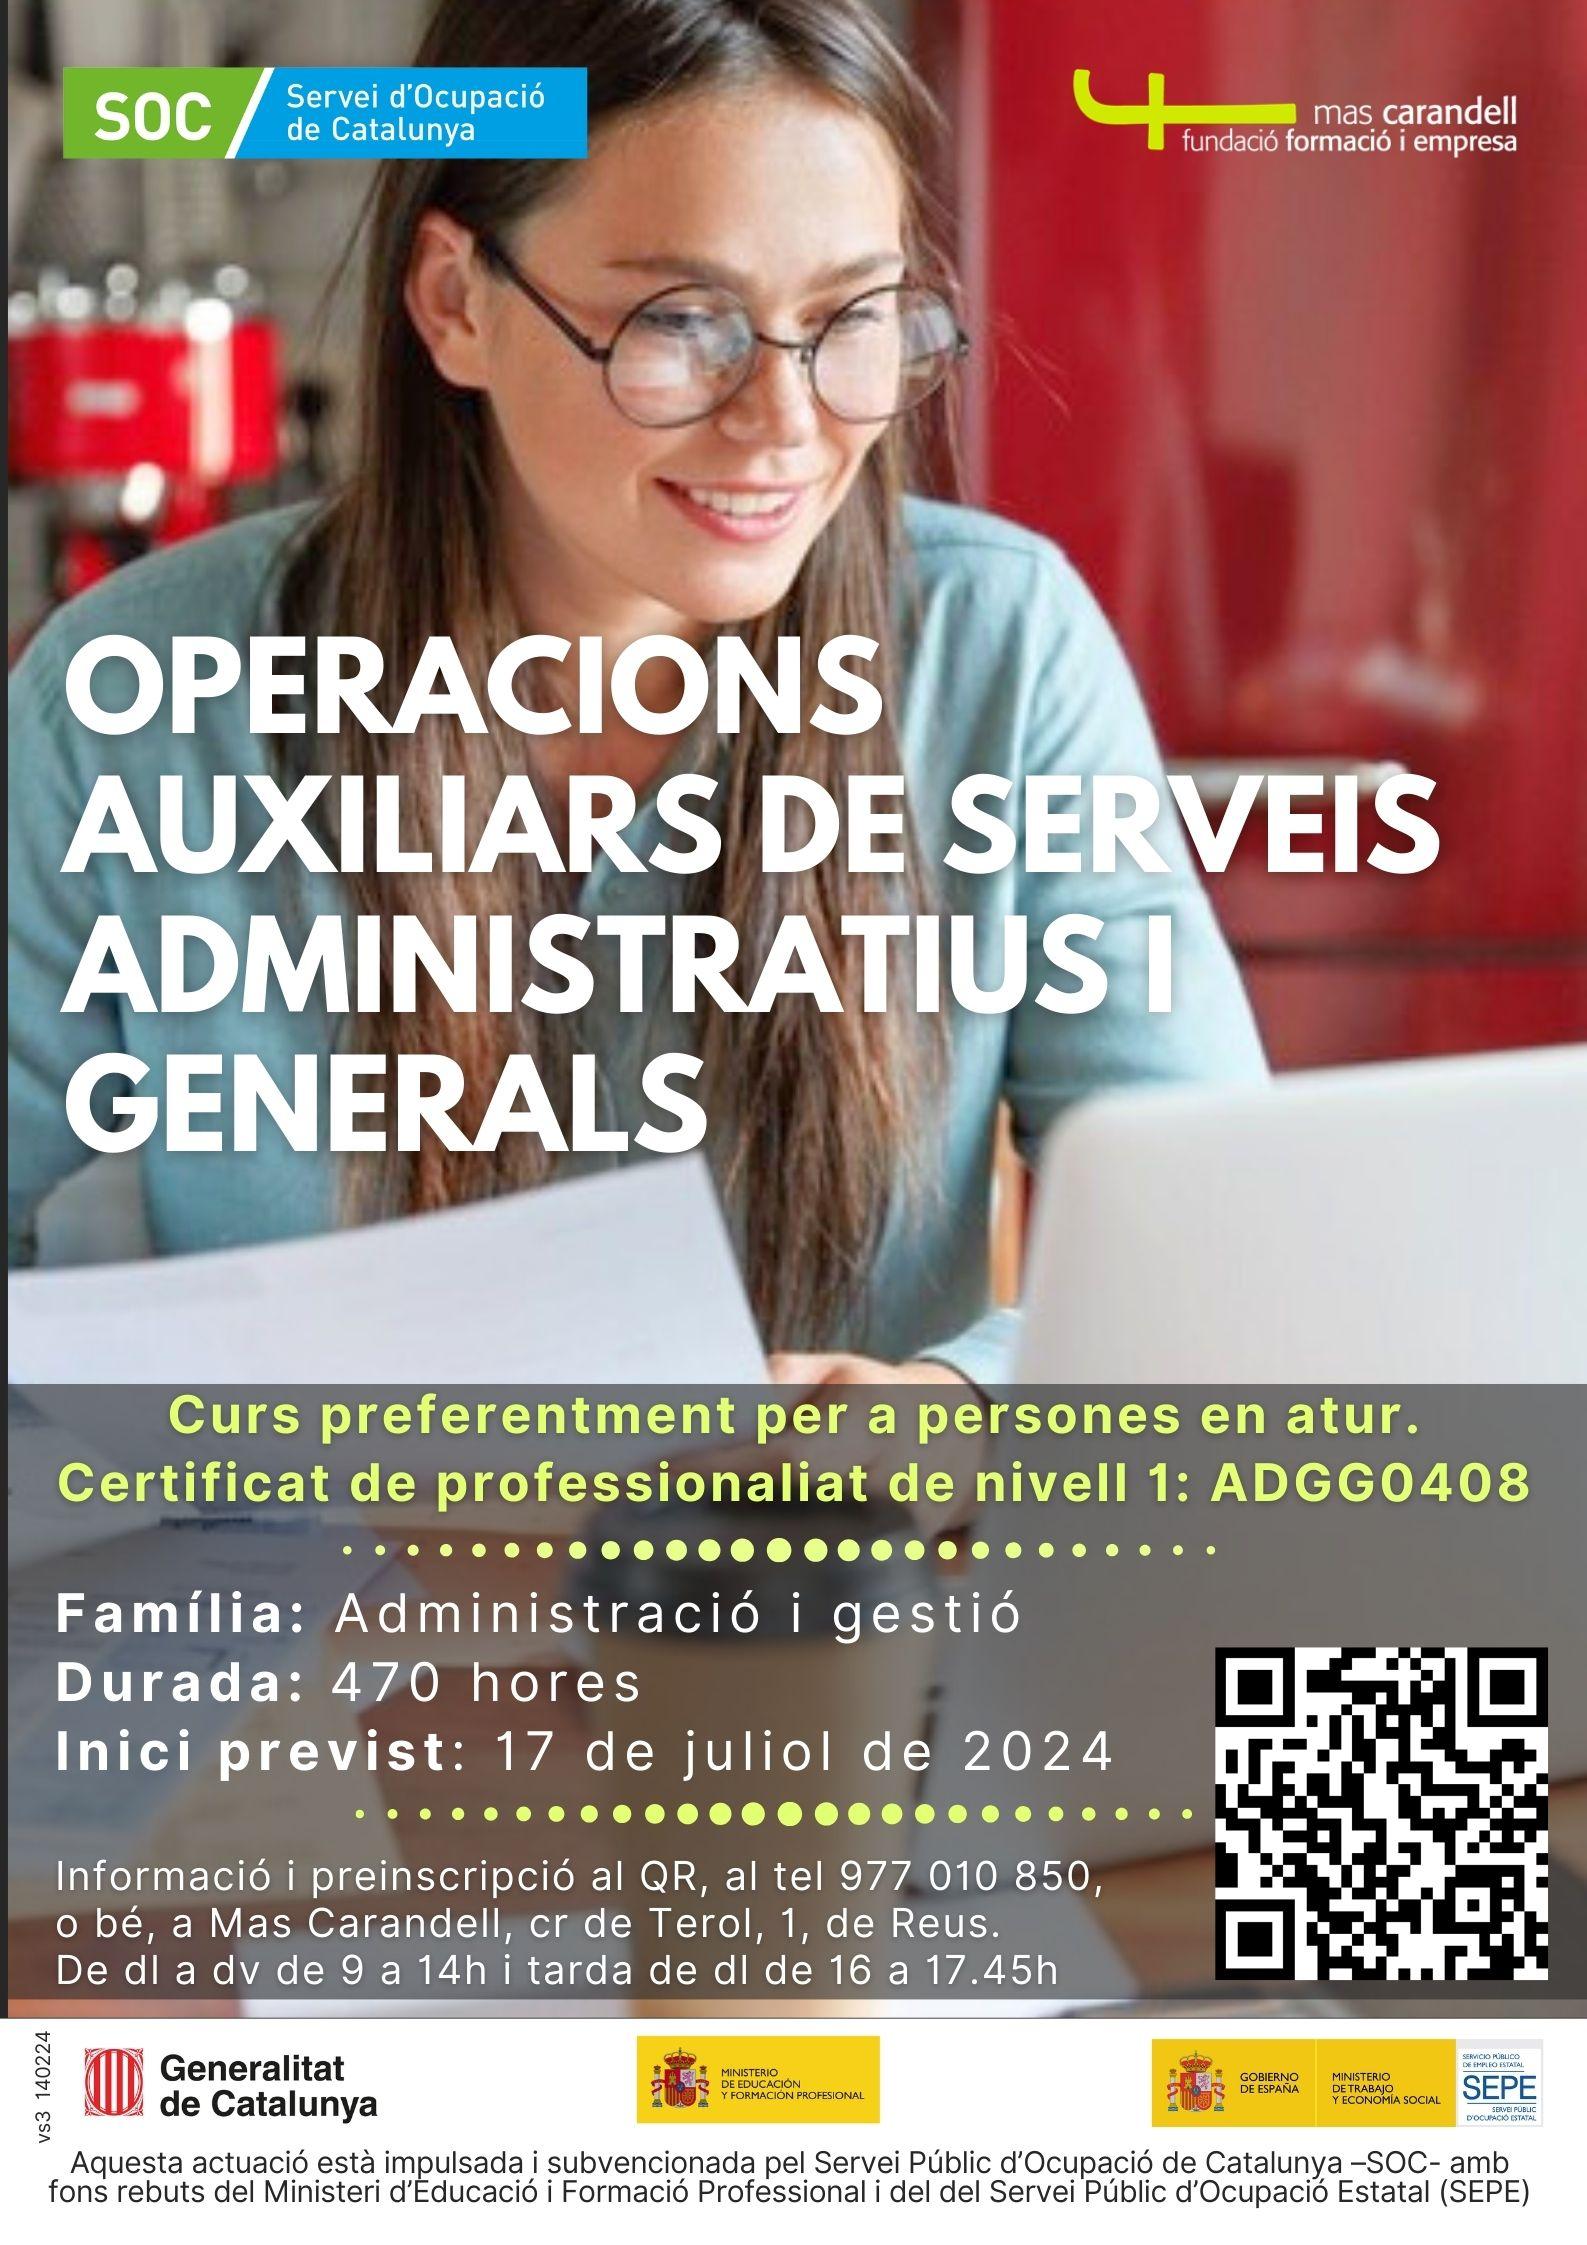 Sesión informativa del curso de Operaciones auxiliares de servicios administrativos y generales (ADGG0408)